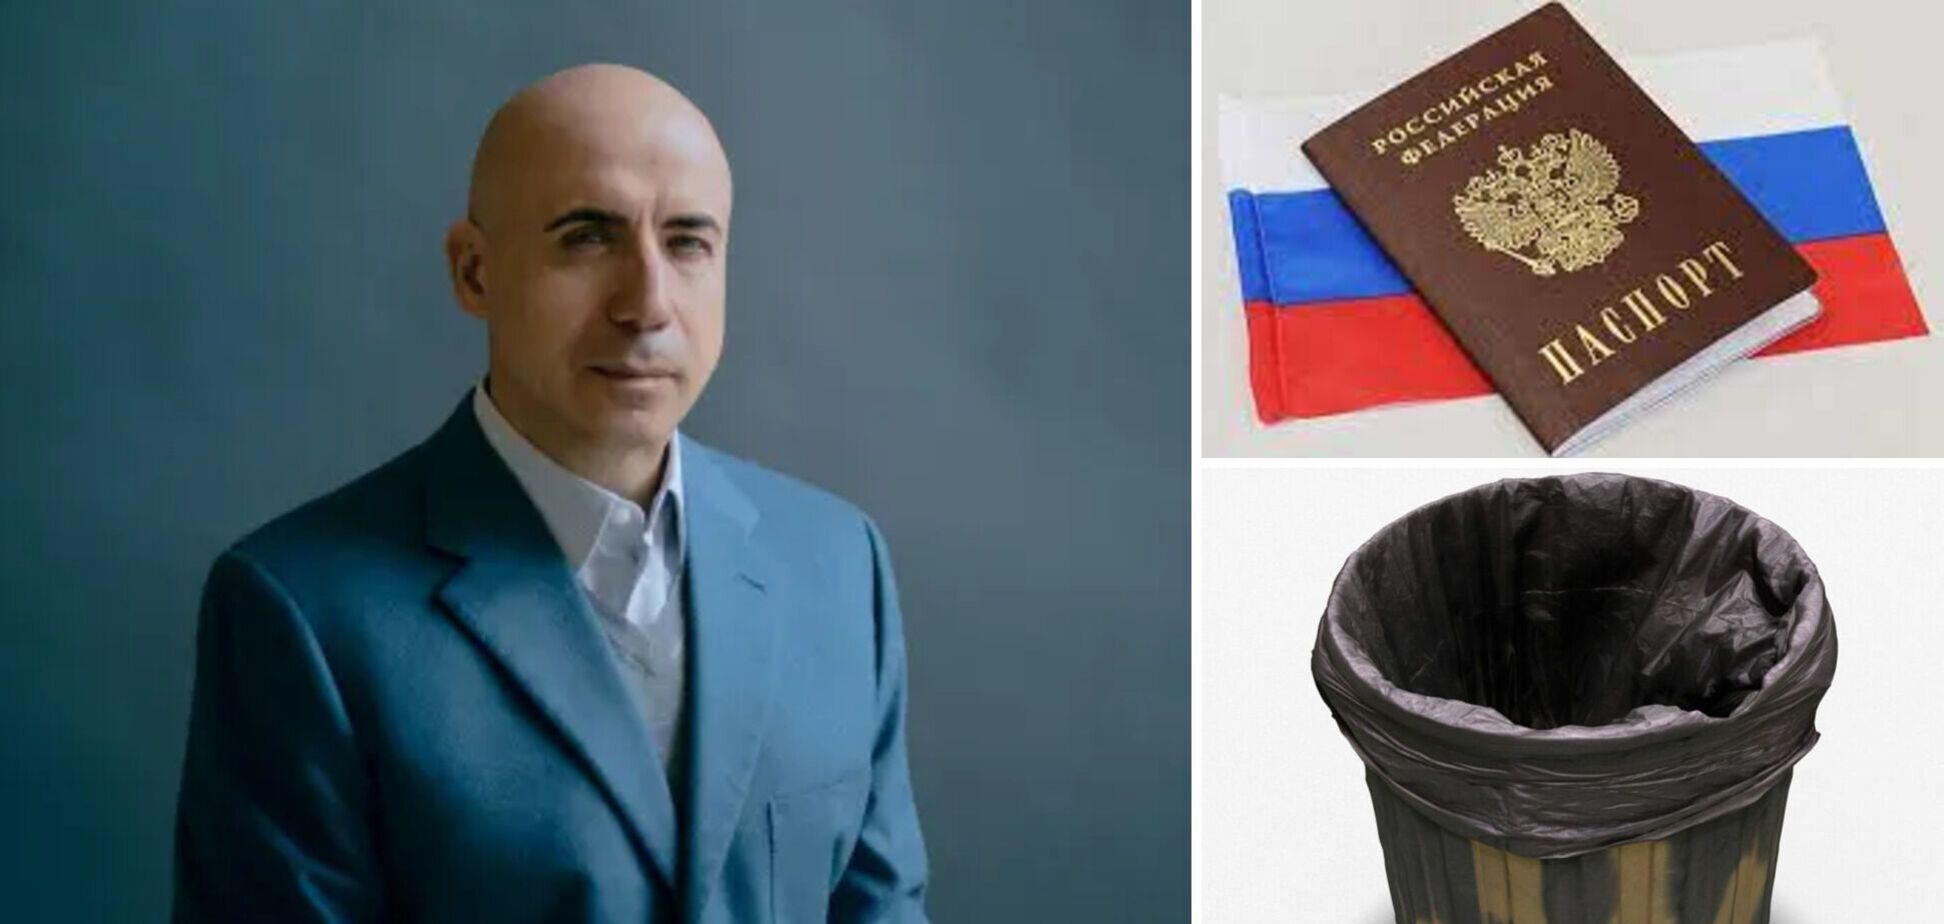 Миллиардер Мильнер, занимающий 15-е место в российском Forbes, отказался от гражданства РФ